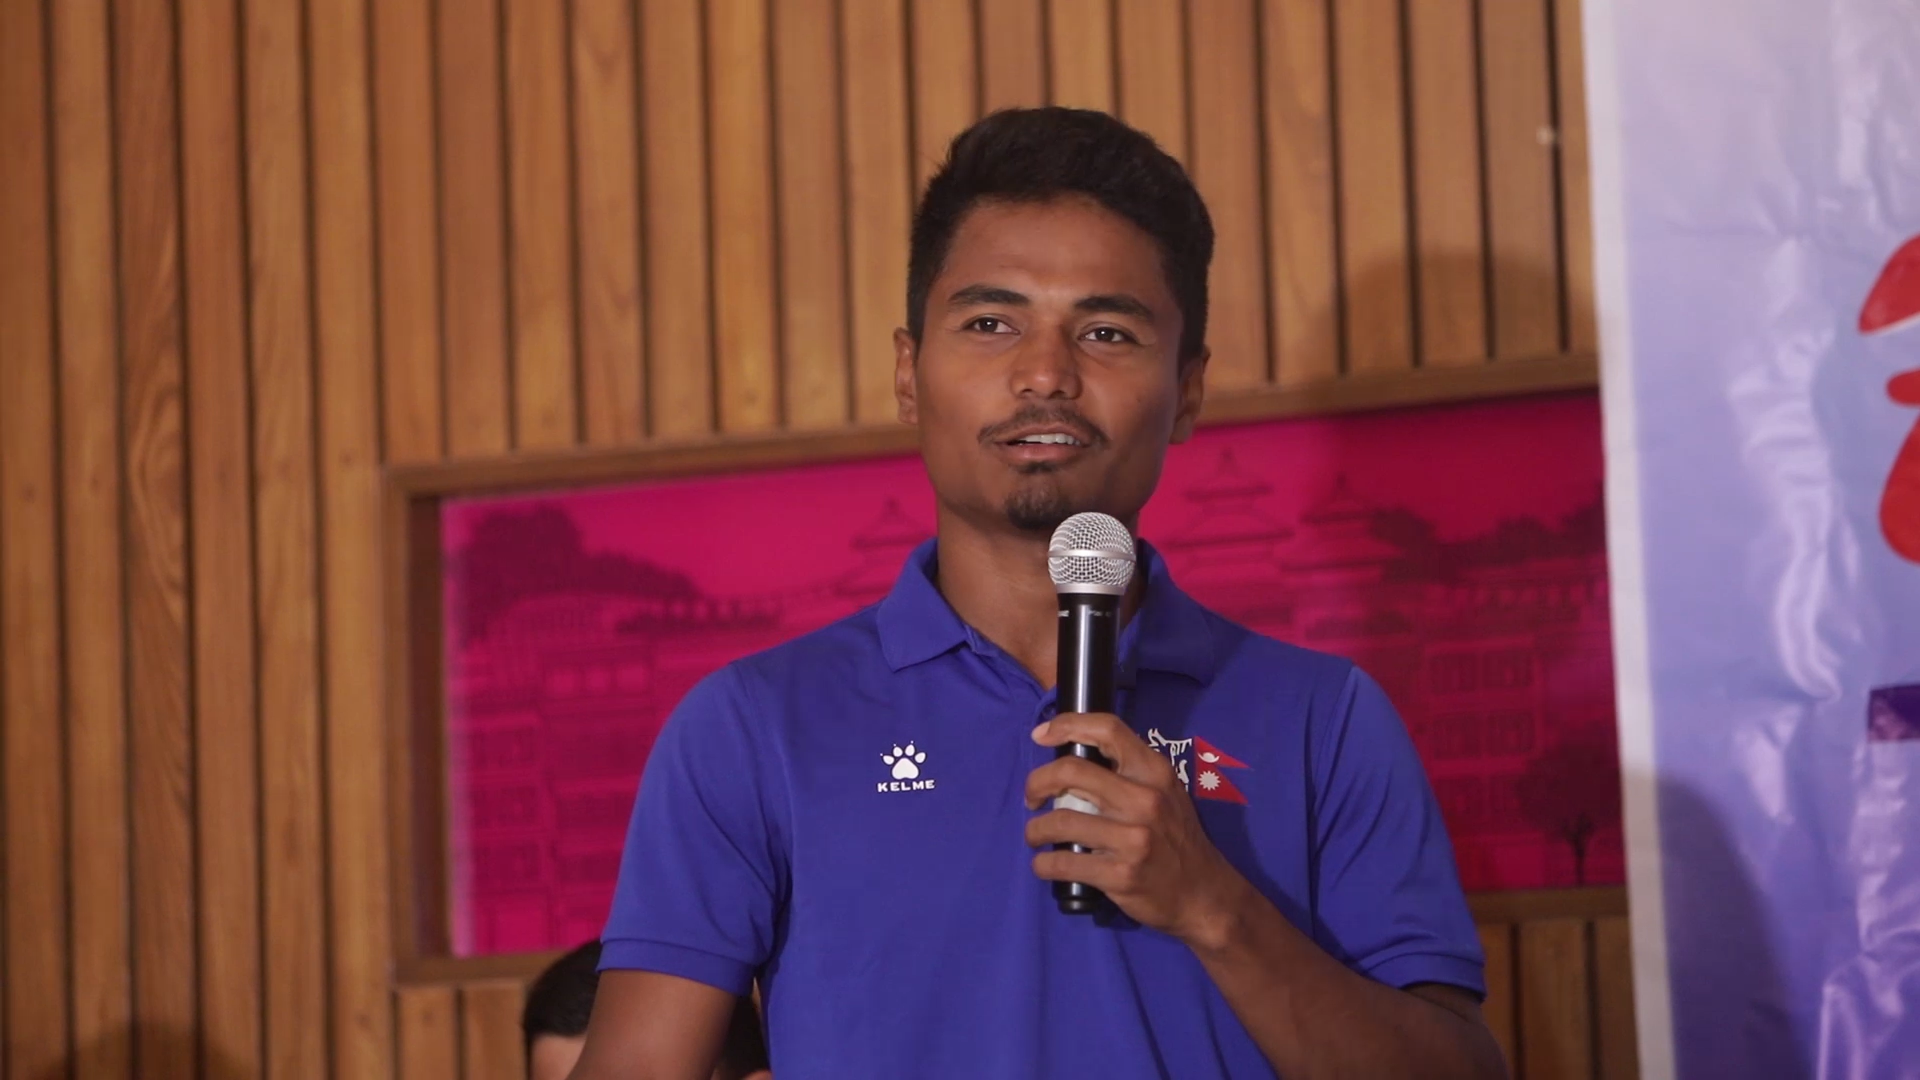 क्रिकेट खेलाडीको पुरस्कार अझै आएन, तर आशावादी छौँः कप्तान पौडेल